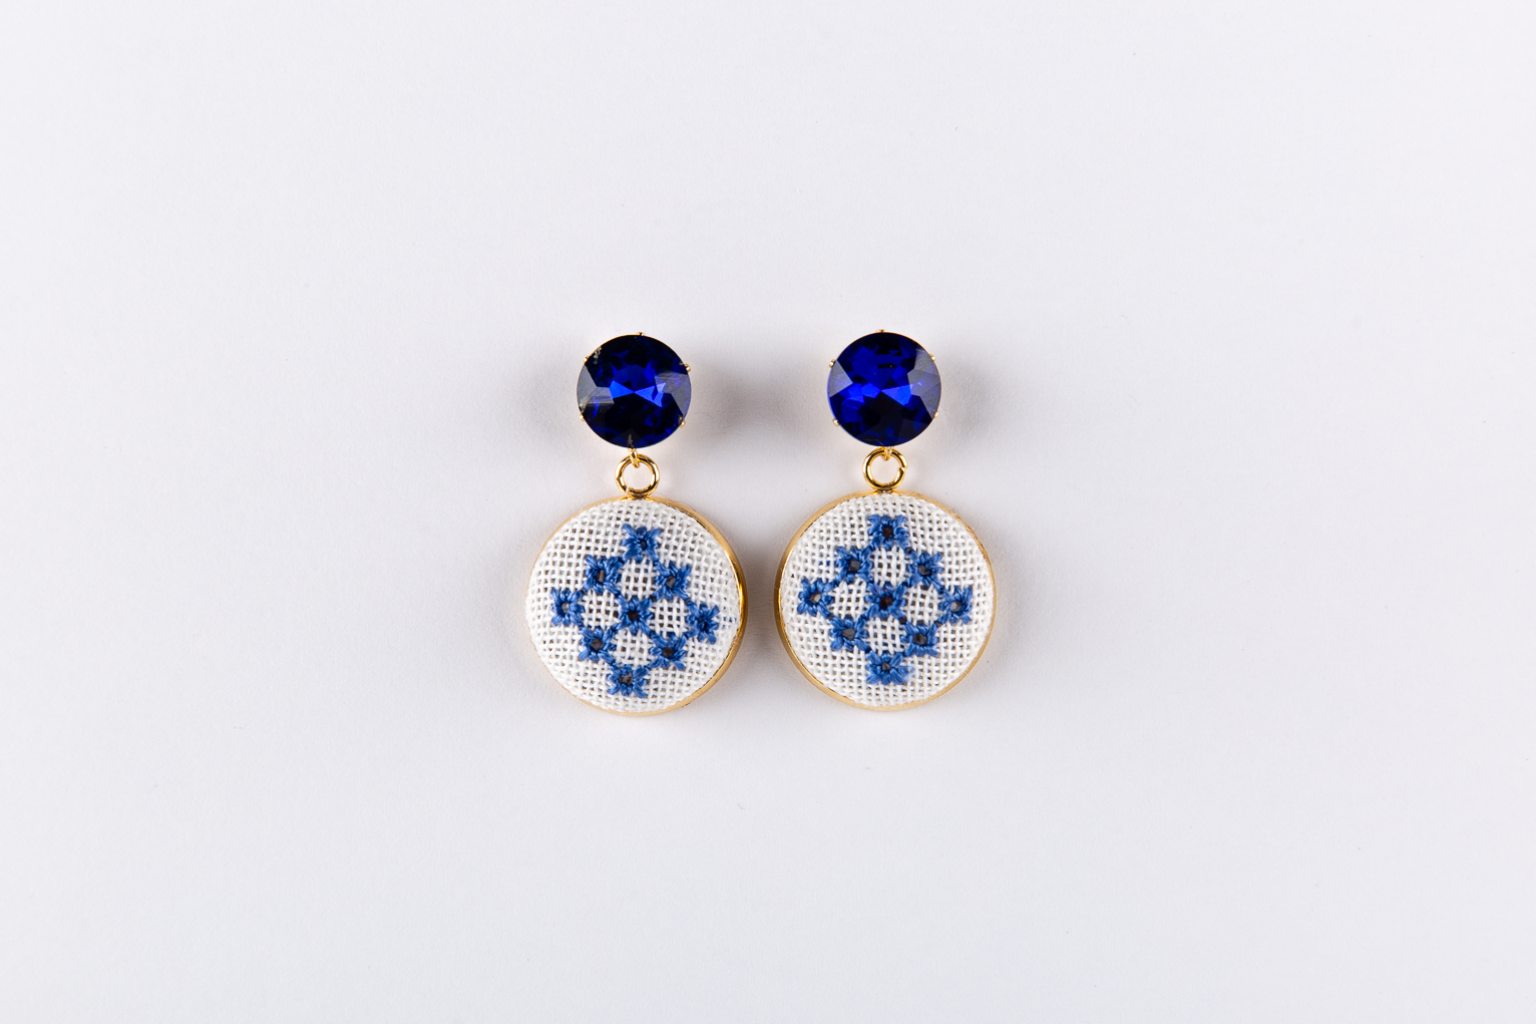 Βlue hand-embroidered earrings